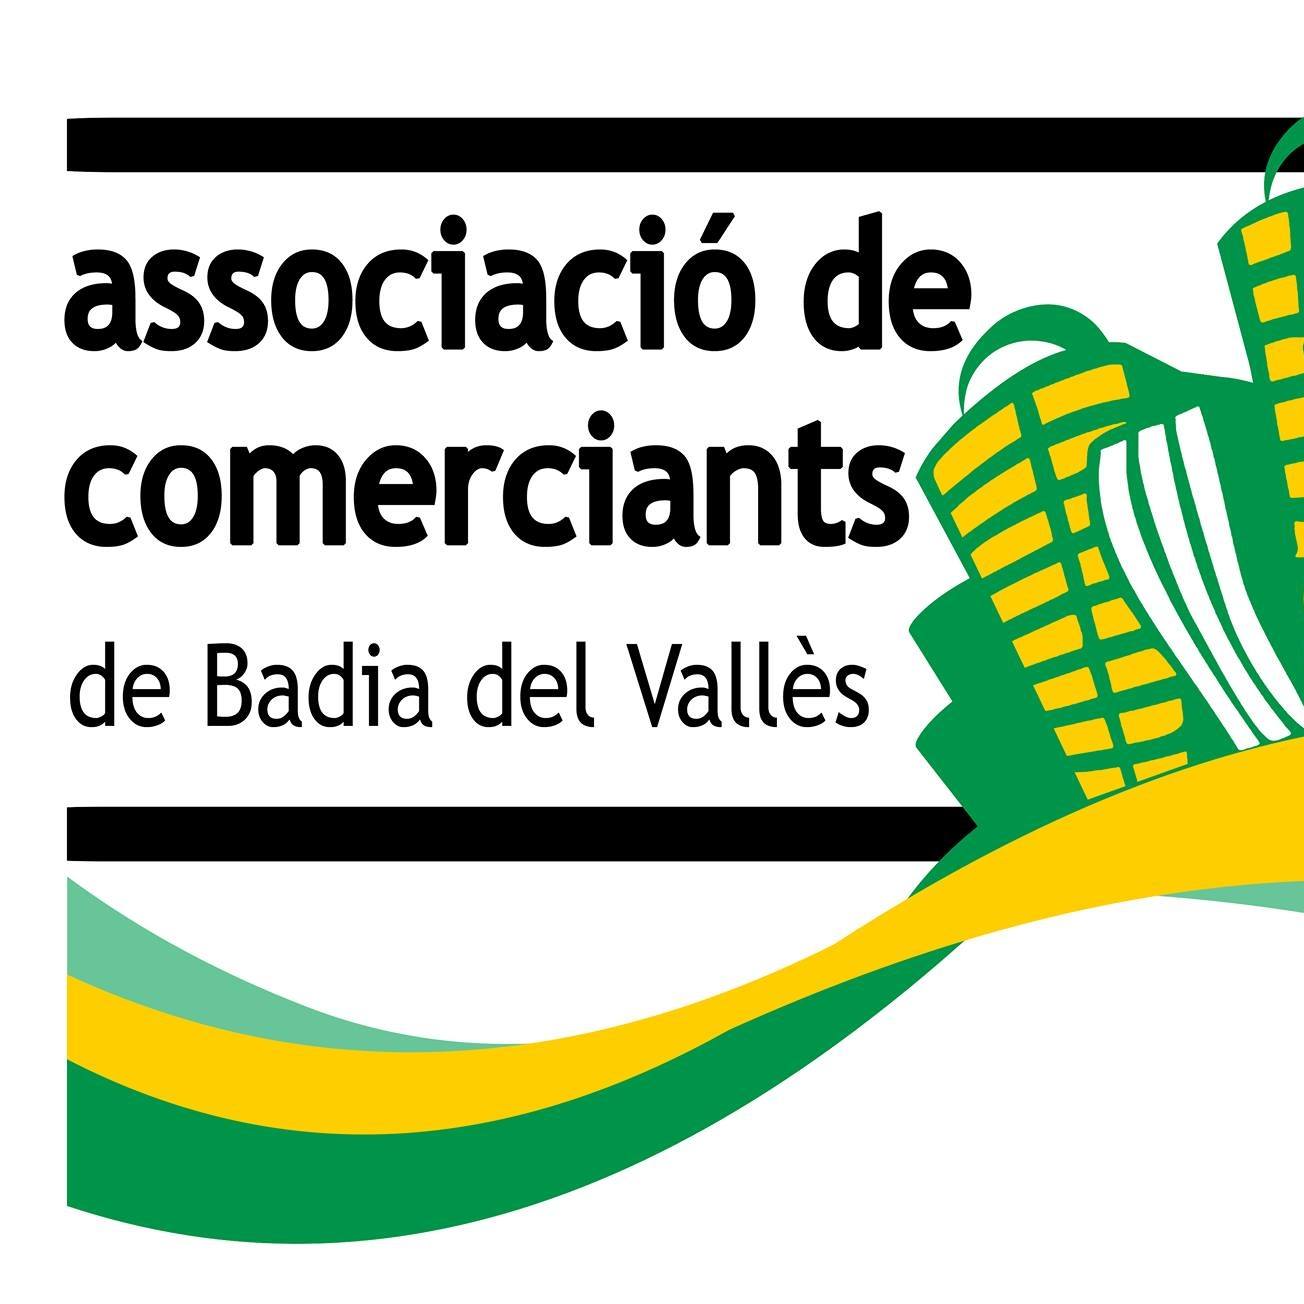 Associaci de Comerciants de Badia del Valls